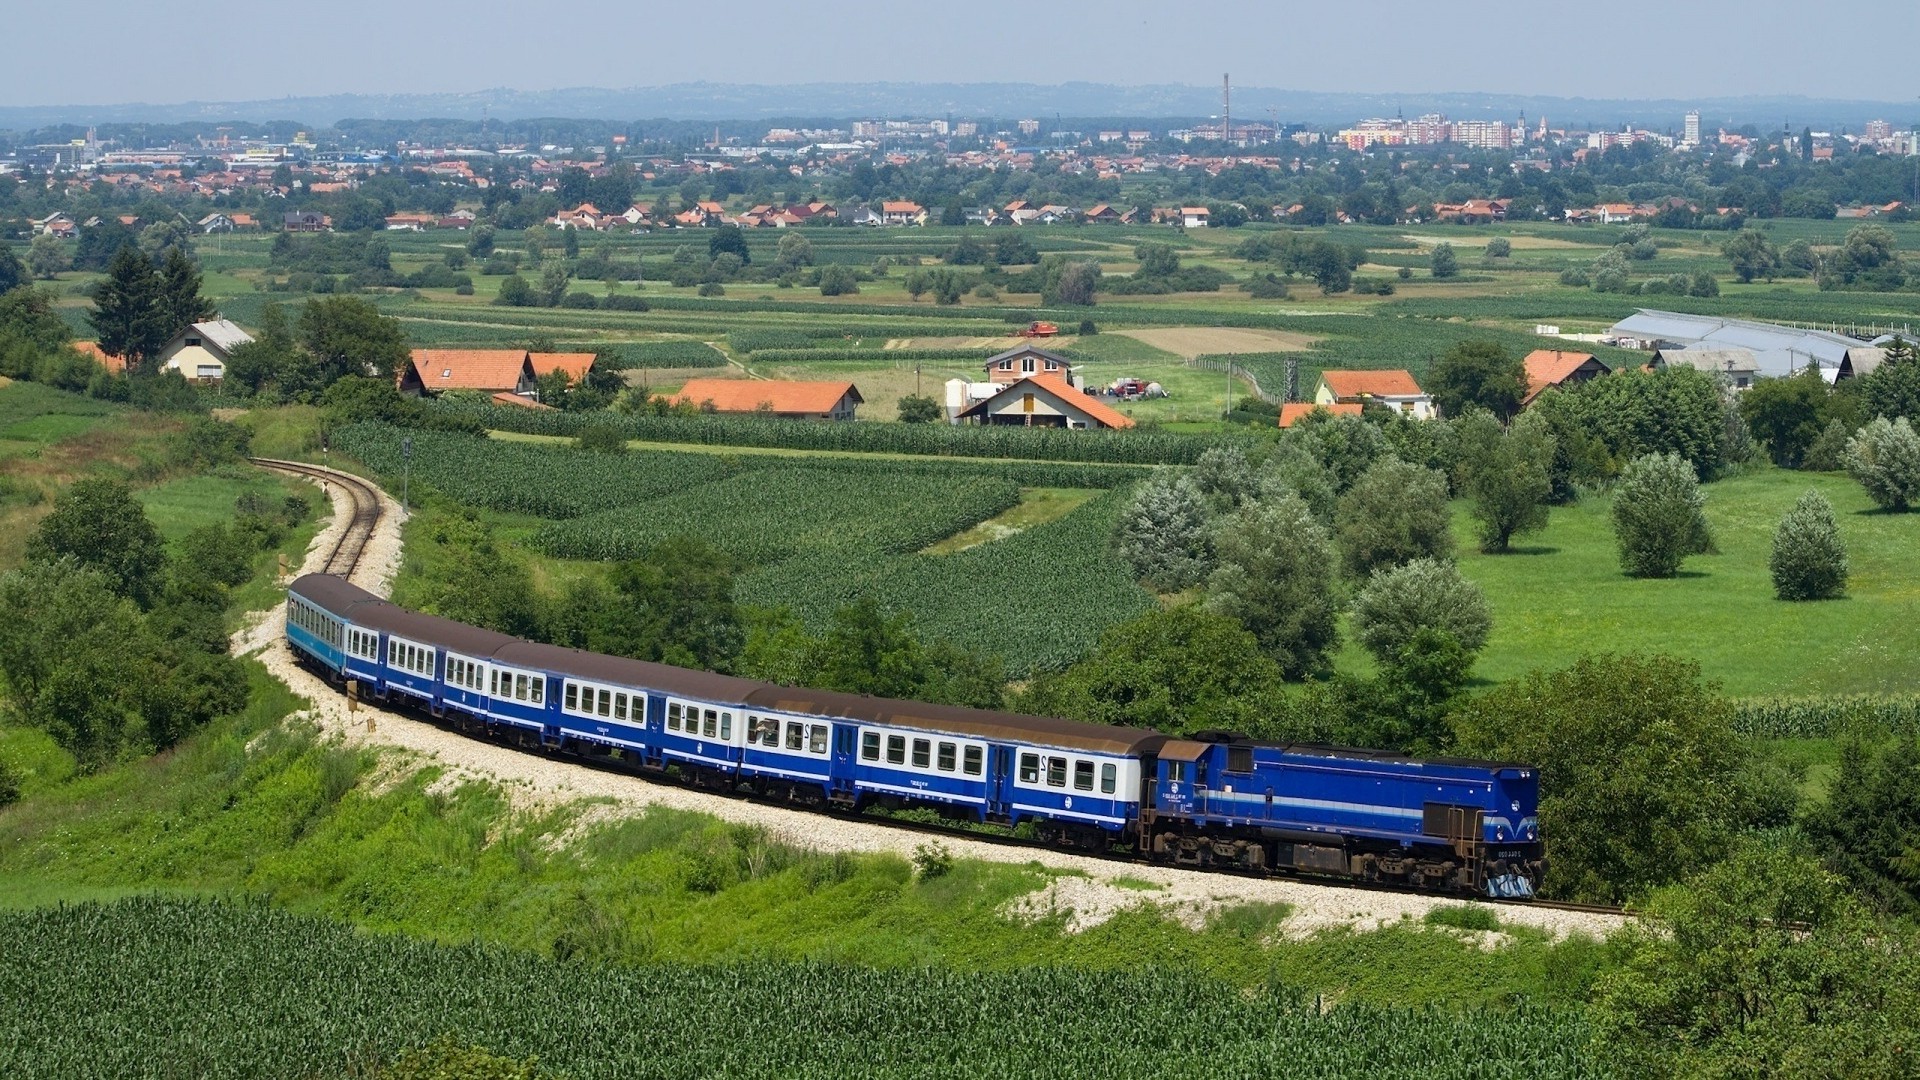 1920x1080 wallpapers: tåg, struktur, blå, fält, utkanten, sommar, stad, järnväg, avstånd, från ovan (image)